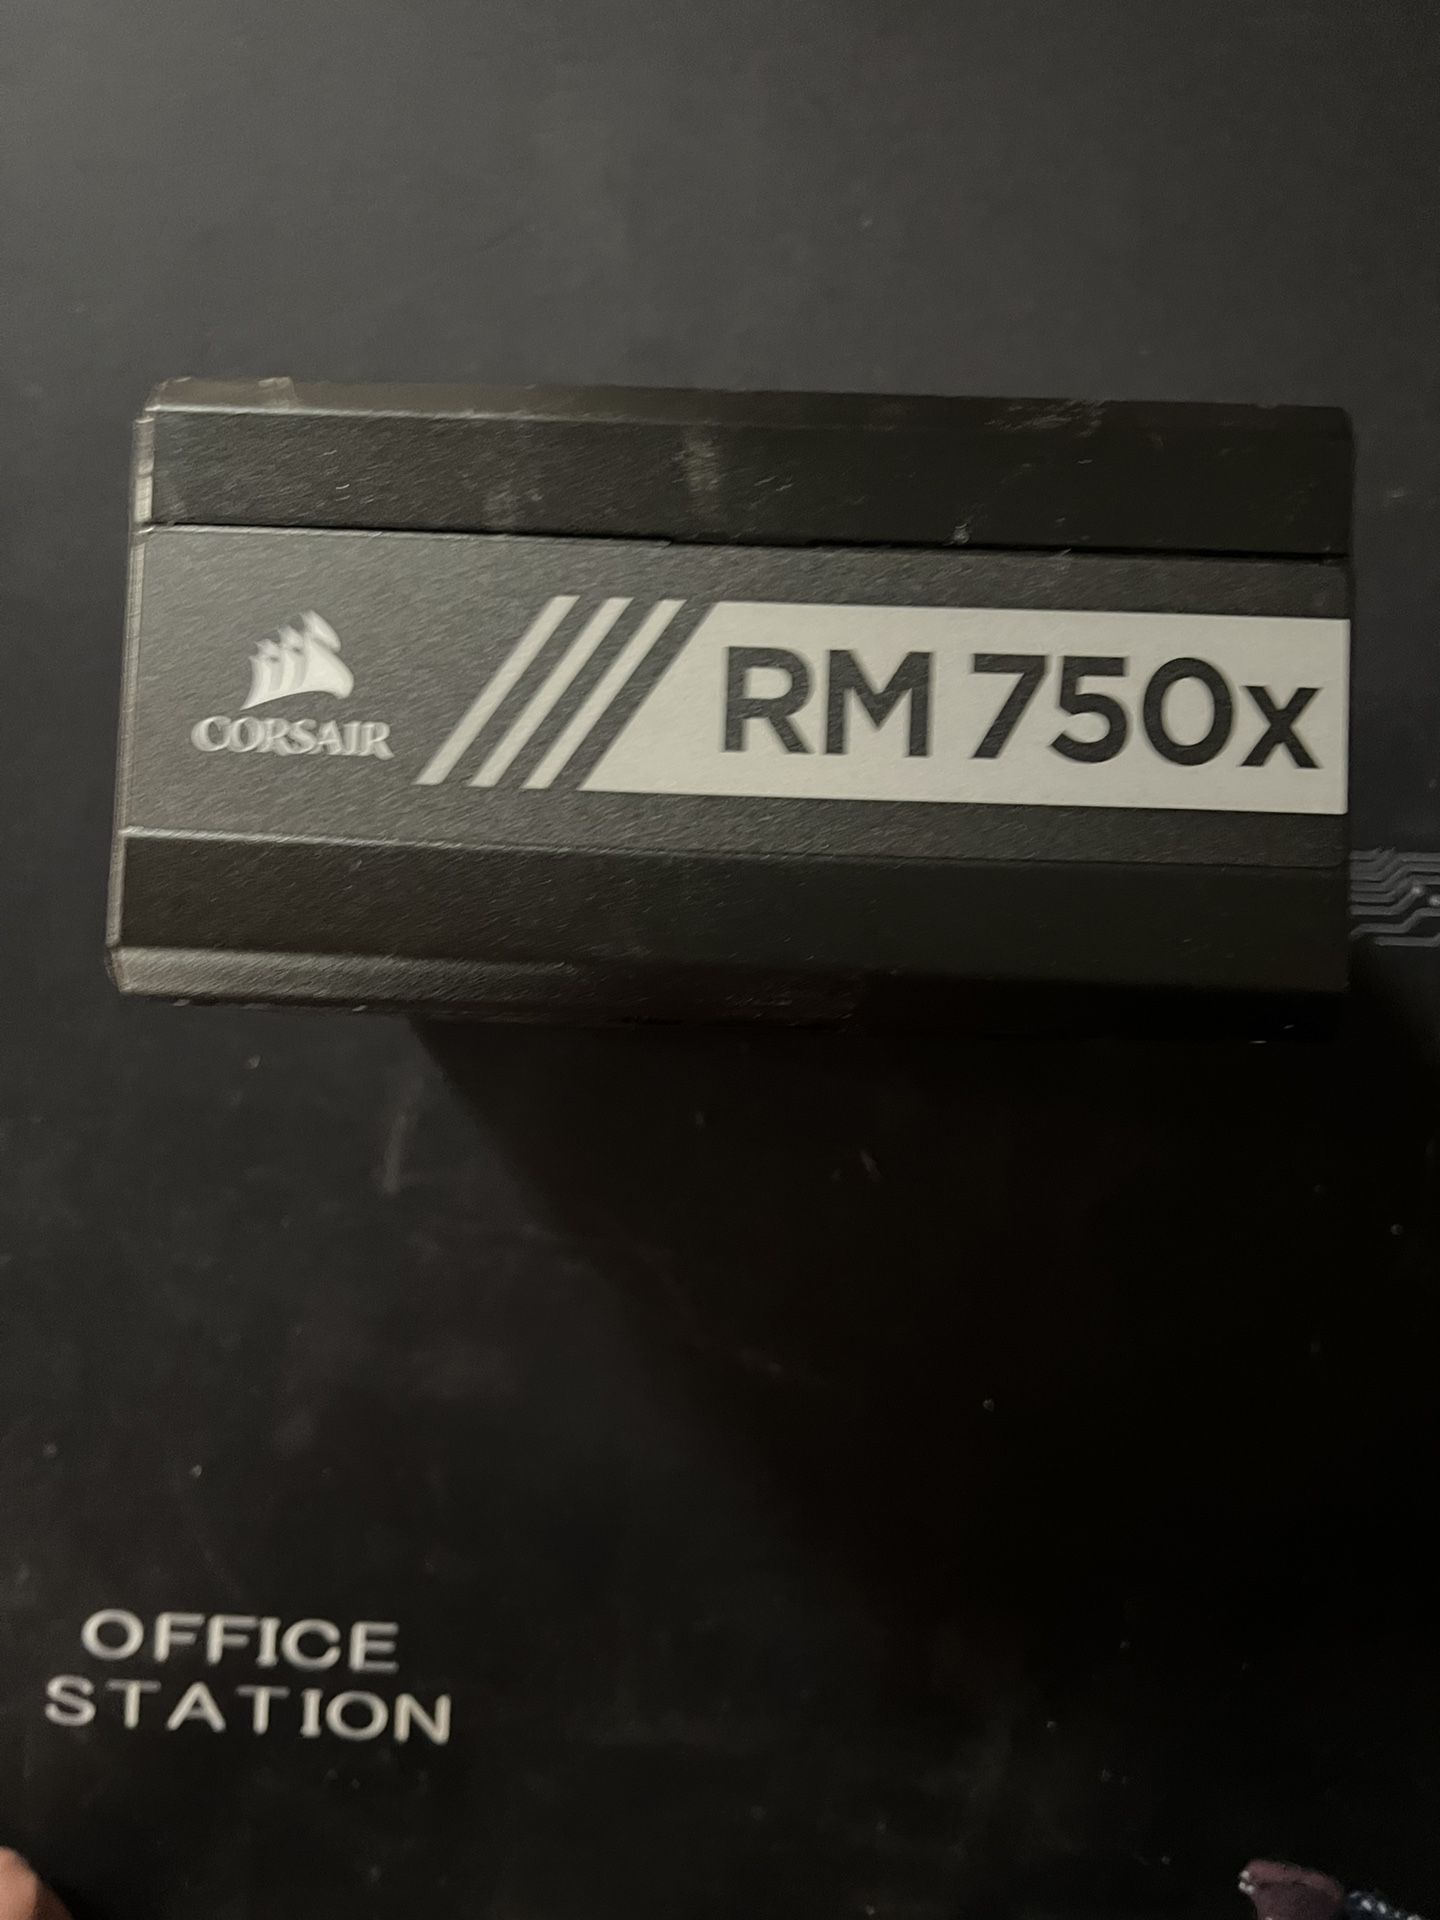 Corsair RMX Series, RM 750x